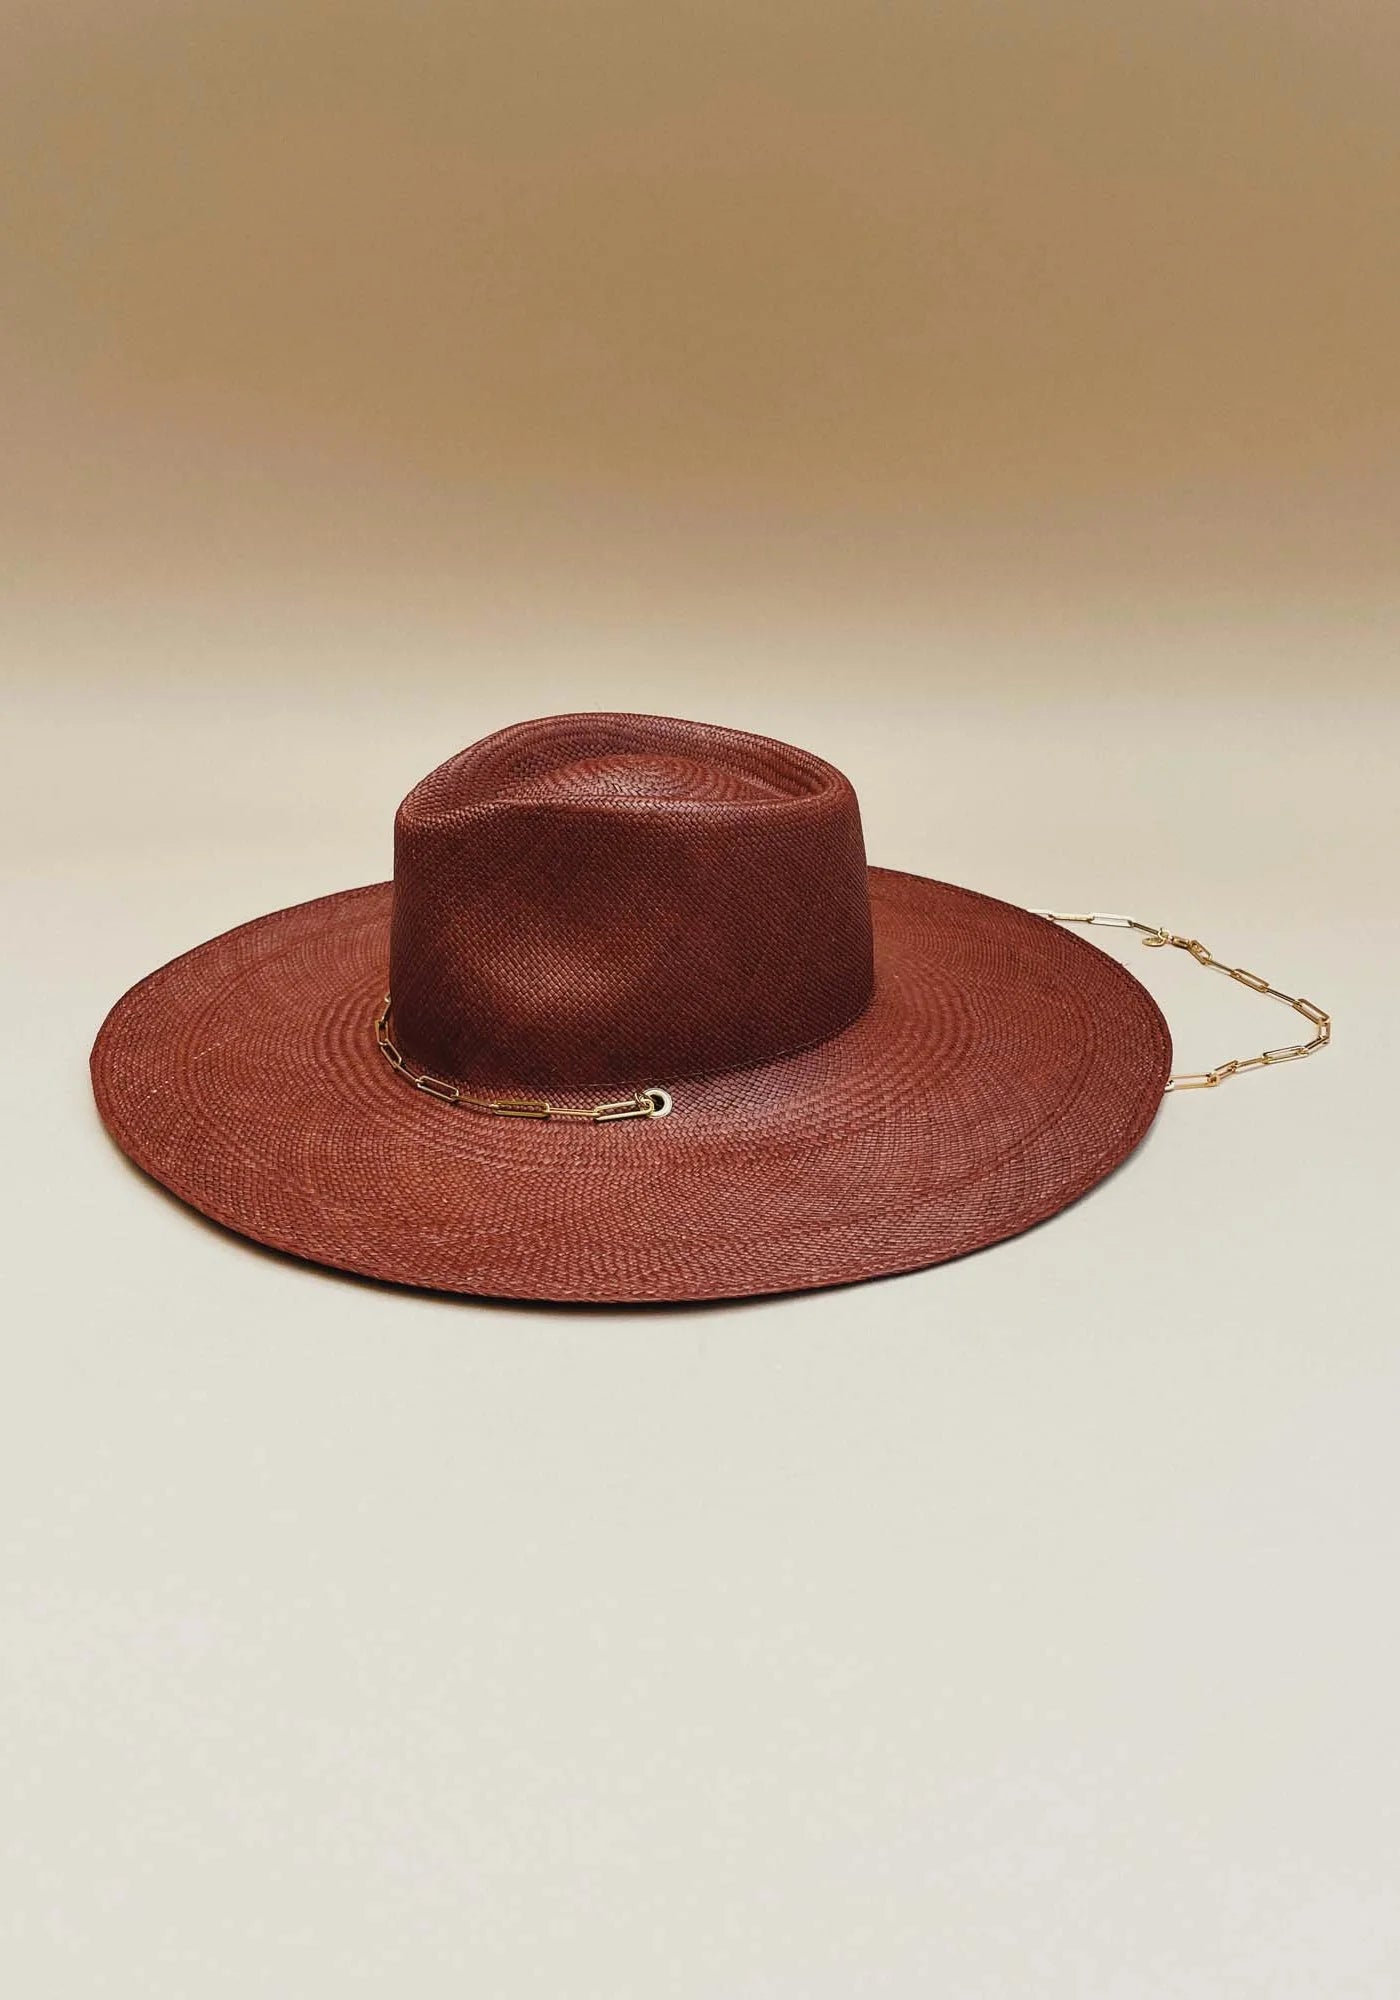 Le chapeau de paille avec chaîne Livy Junior auburn pour femme de chez Van Palma